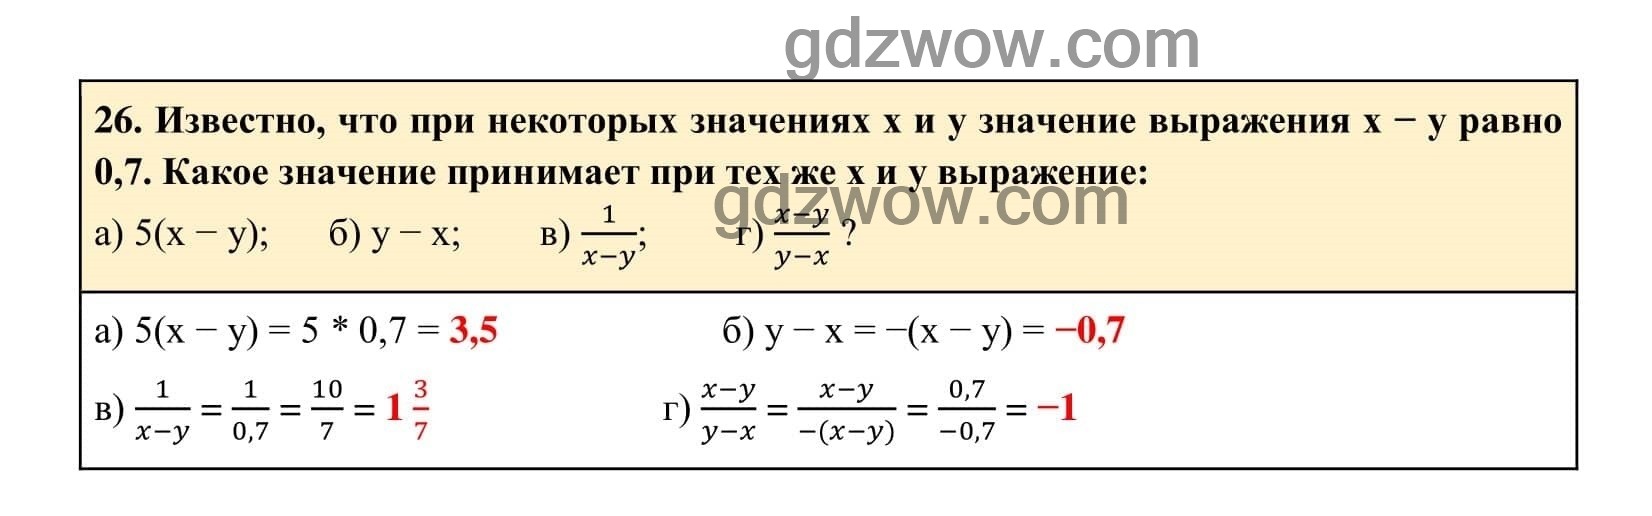 Упражнение 26 - ГДЗ по Алгебре 7 класс Учебник Макарычев (решебник) - GDZwow